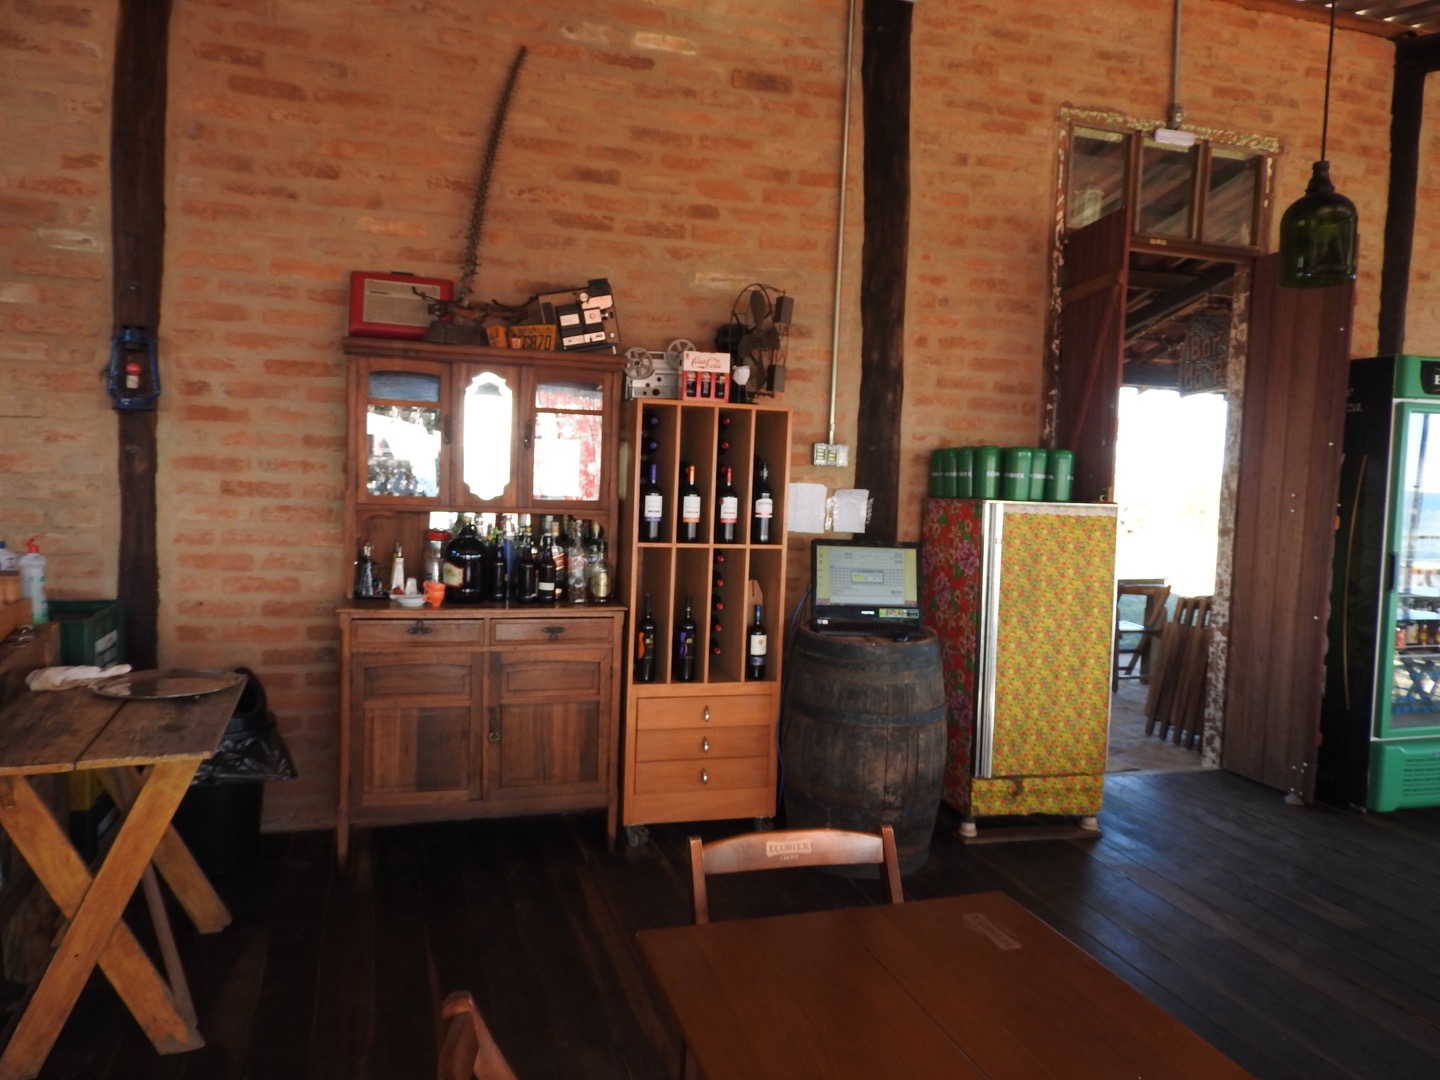 Área interna do restaurante Bar da Pedra (Foto: Alessandra Maróstica)